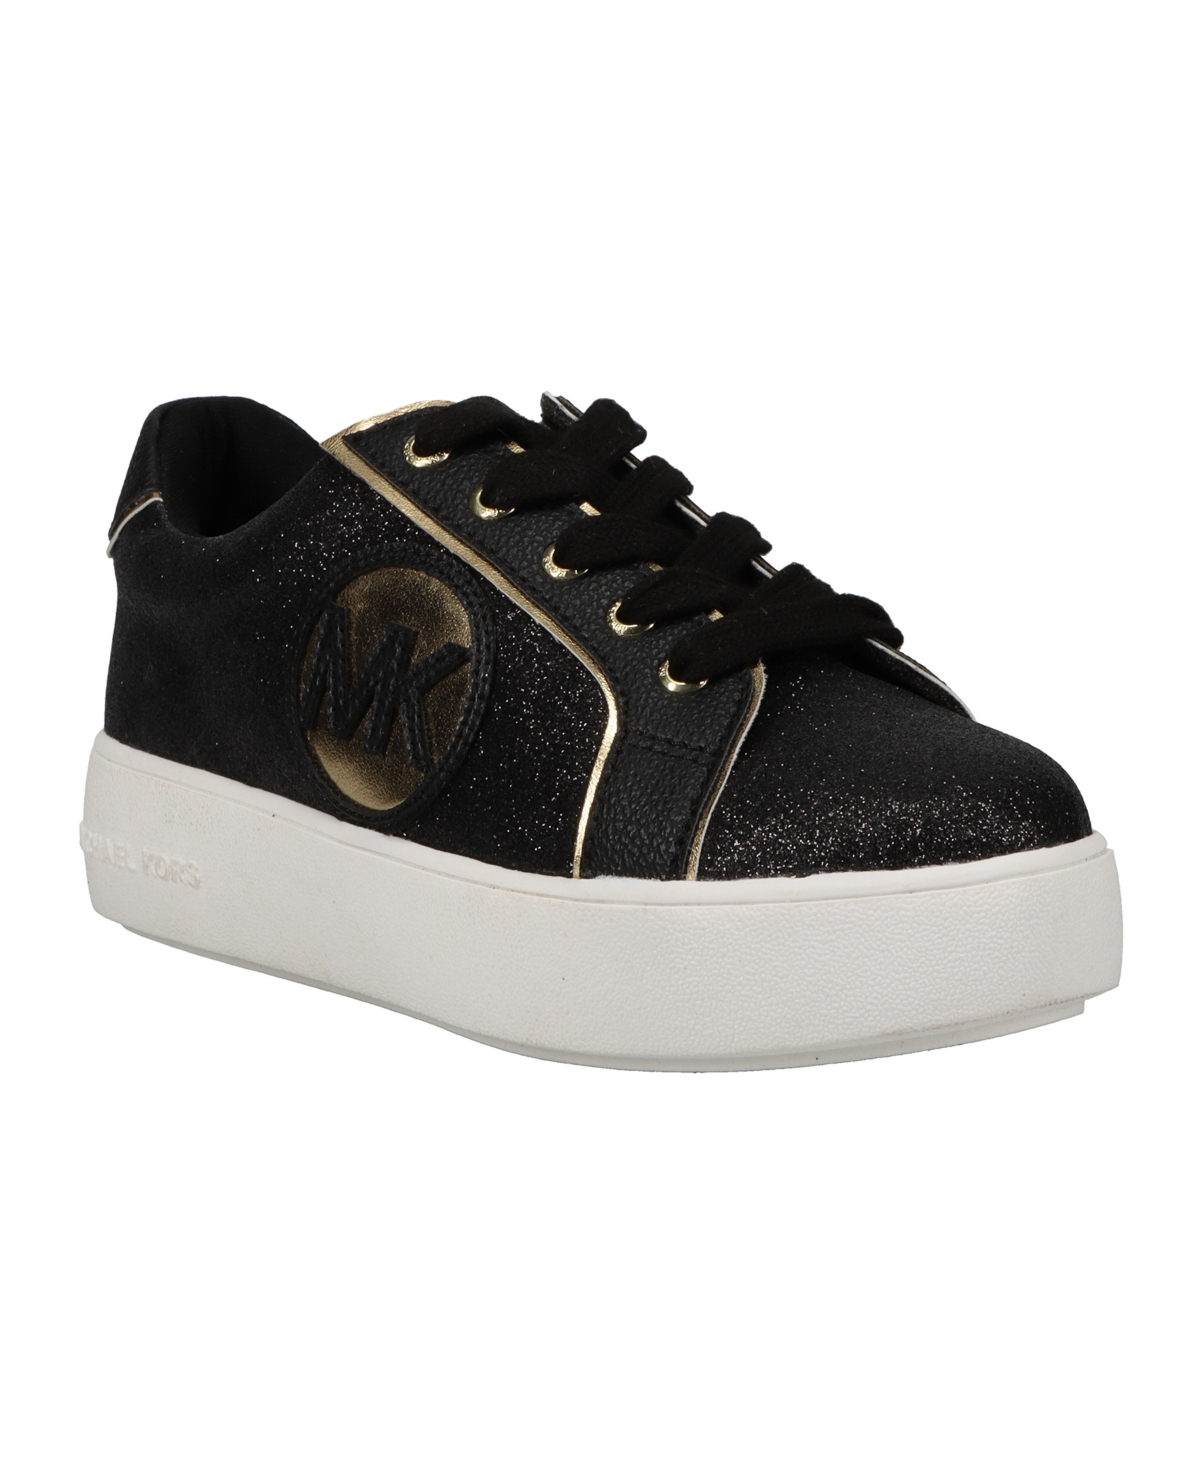 Michael Kors Kids' Little Girl's & Girl's Jordana Poppy Glittery Platform Sneakers In Black/gold